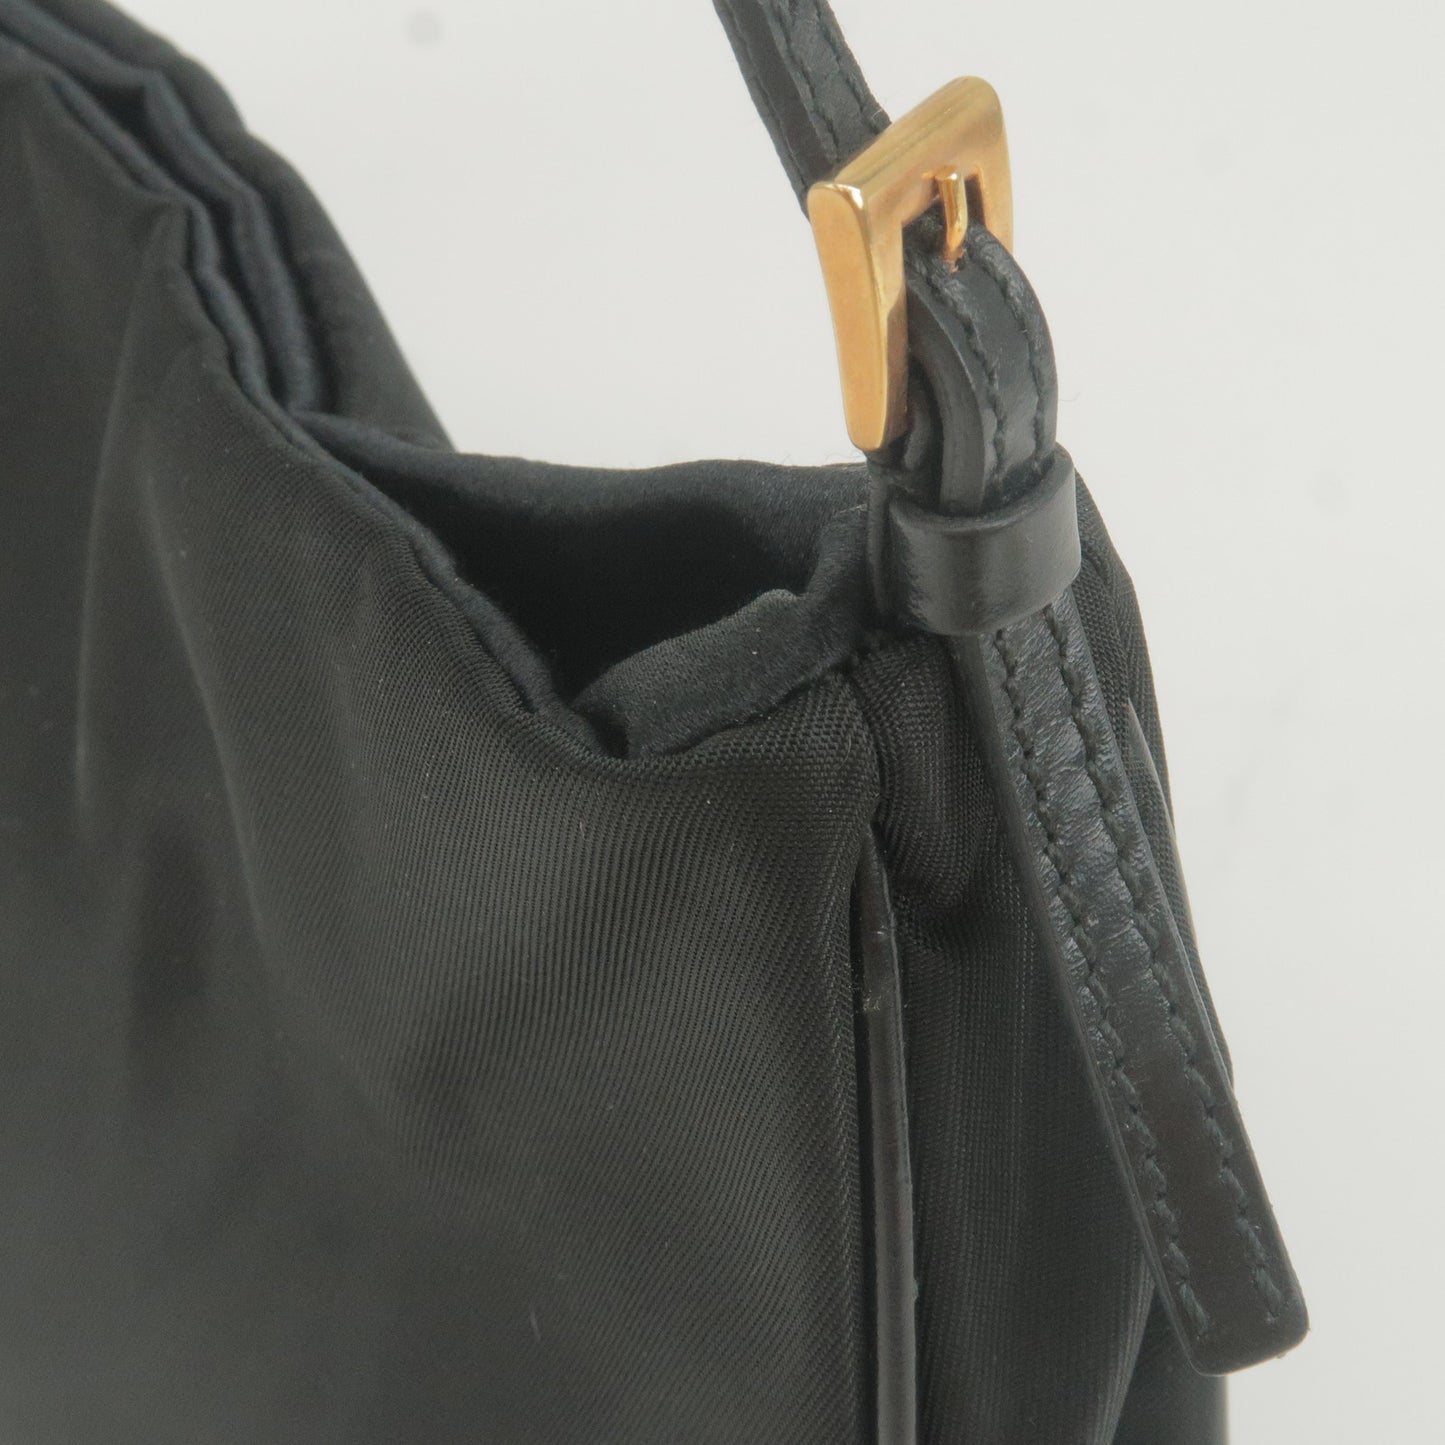 PRADA Nylon Chain Shoulder Bag Rose Gold NERO Black 1BB903